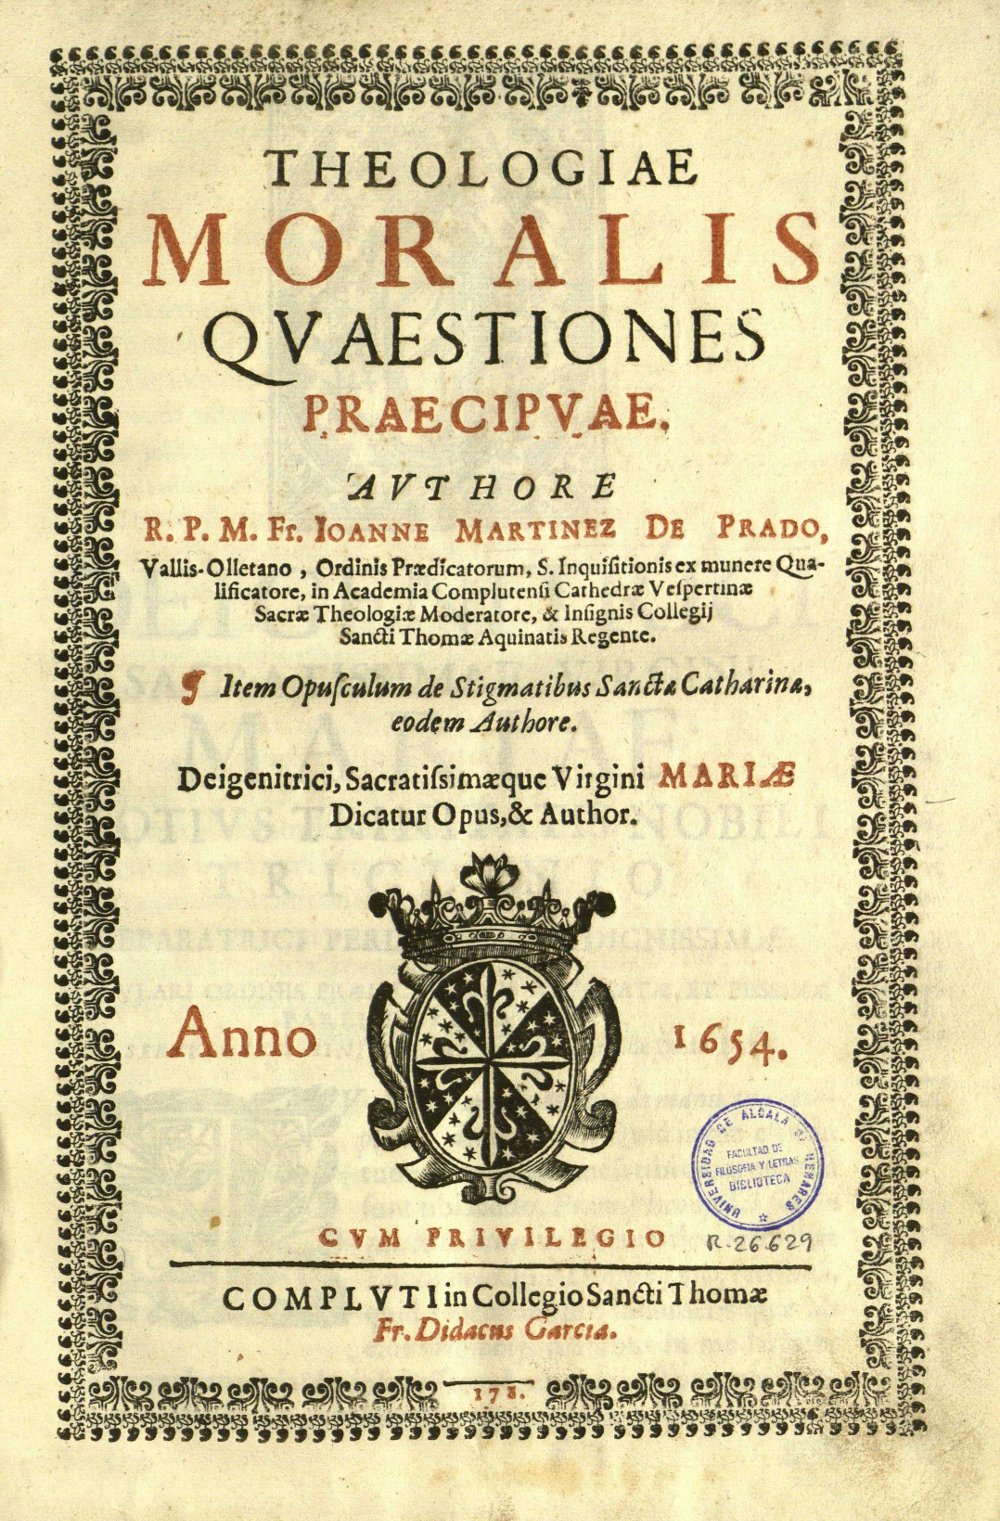 Theologiae moralis quaestiones praecipuae, 1654